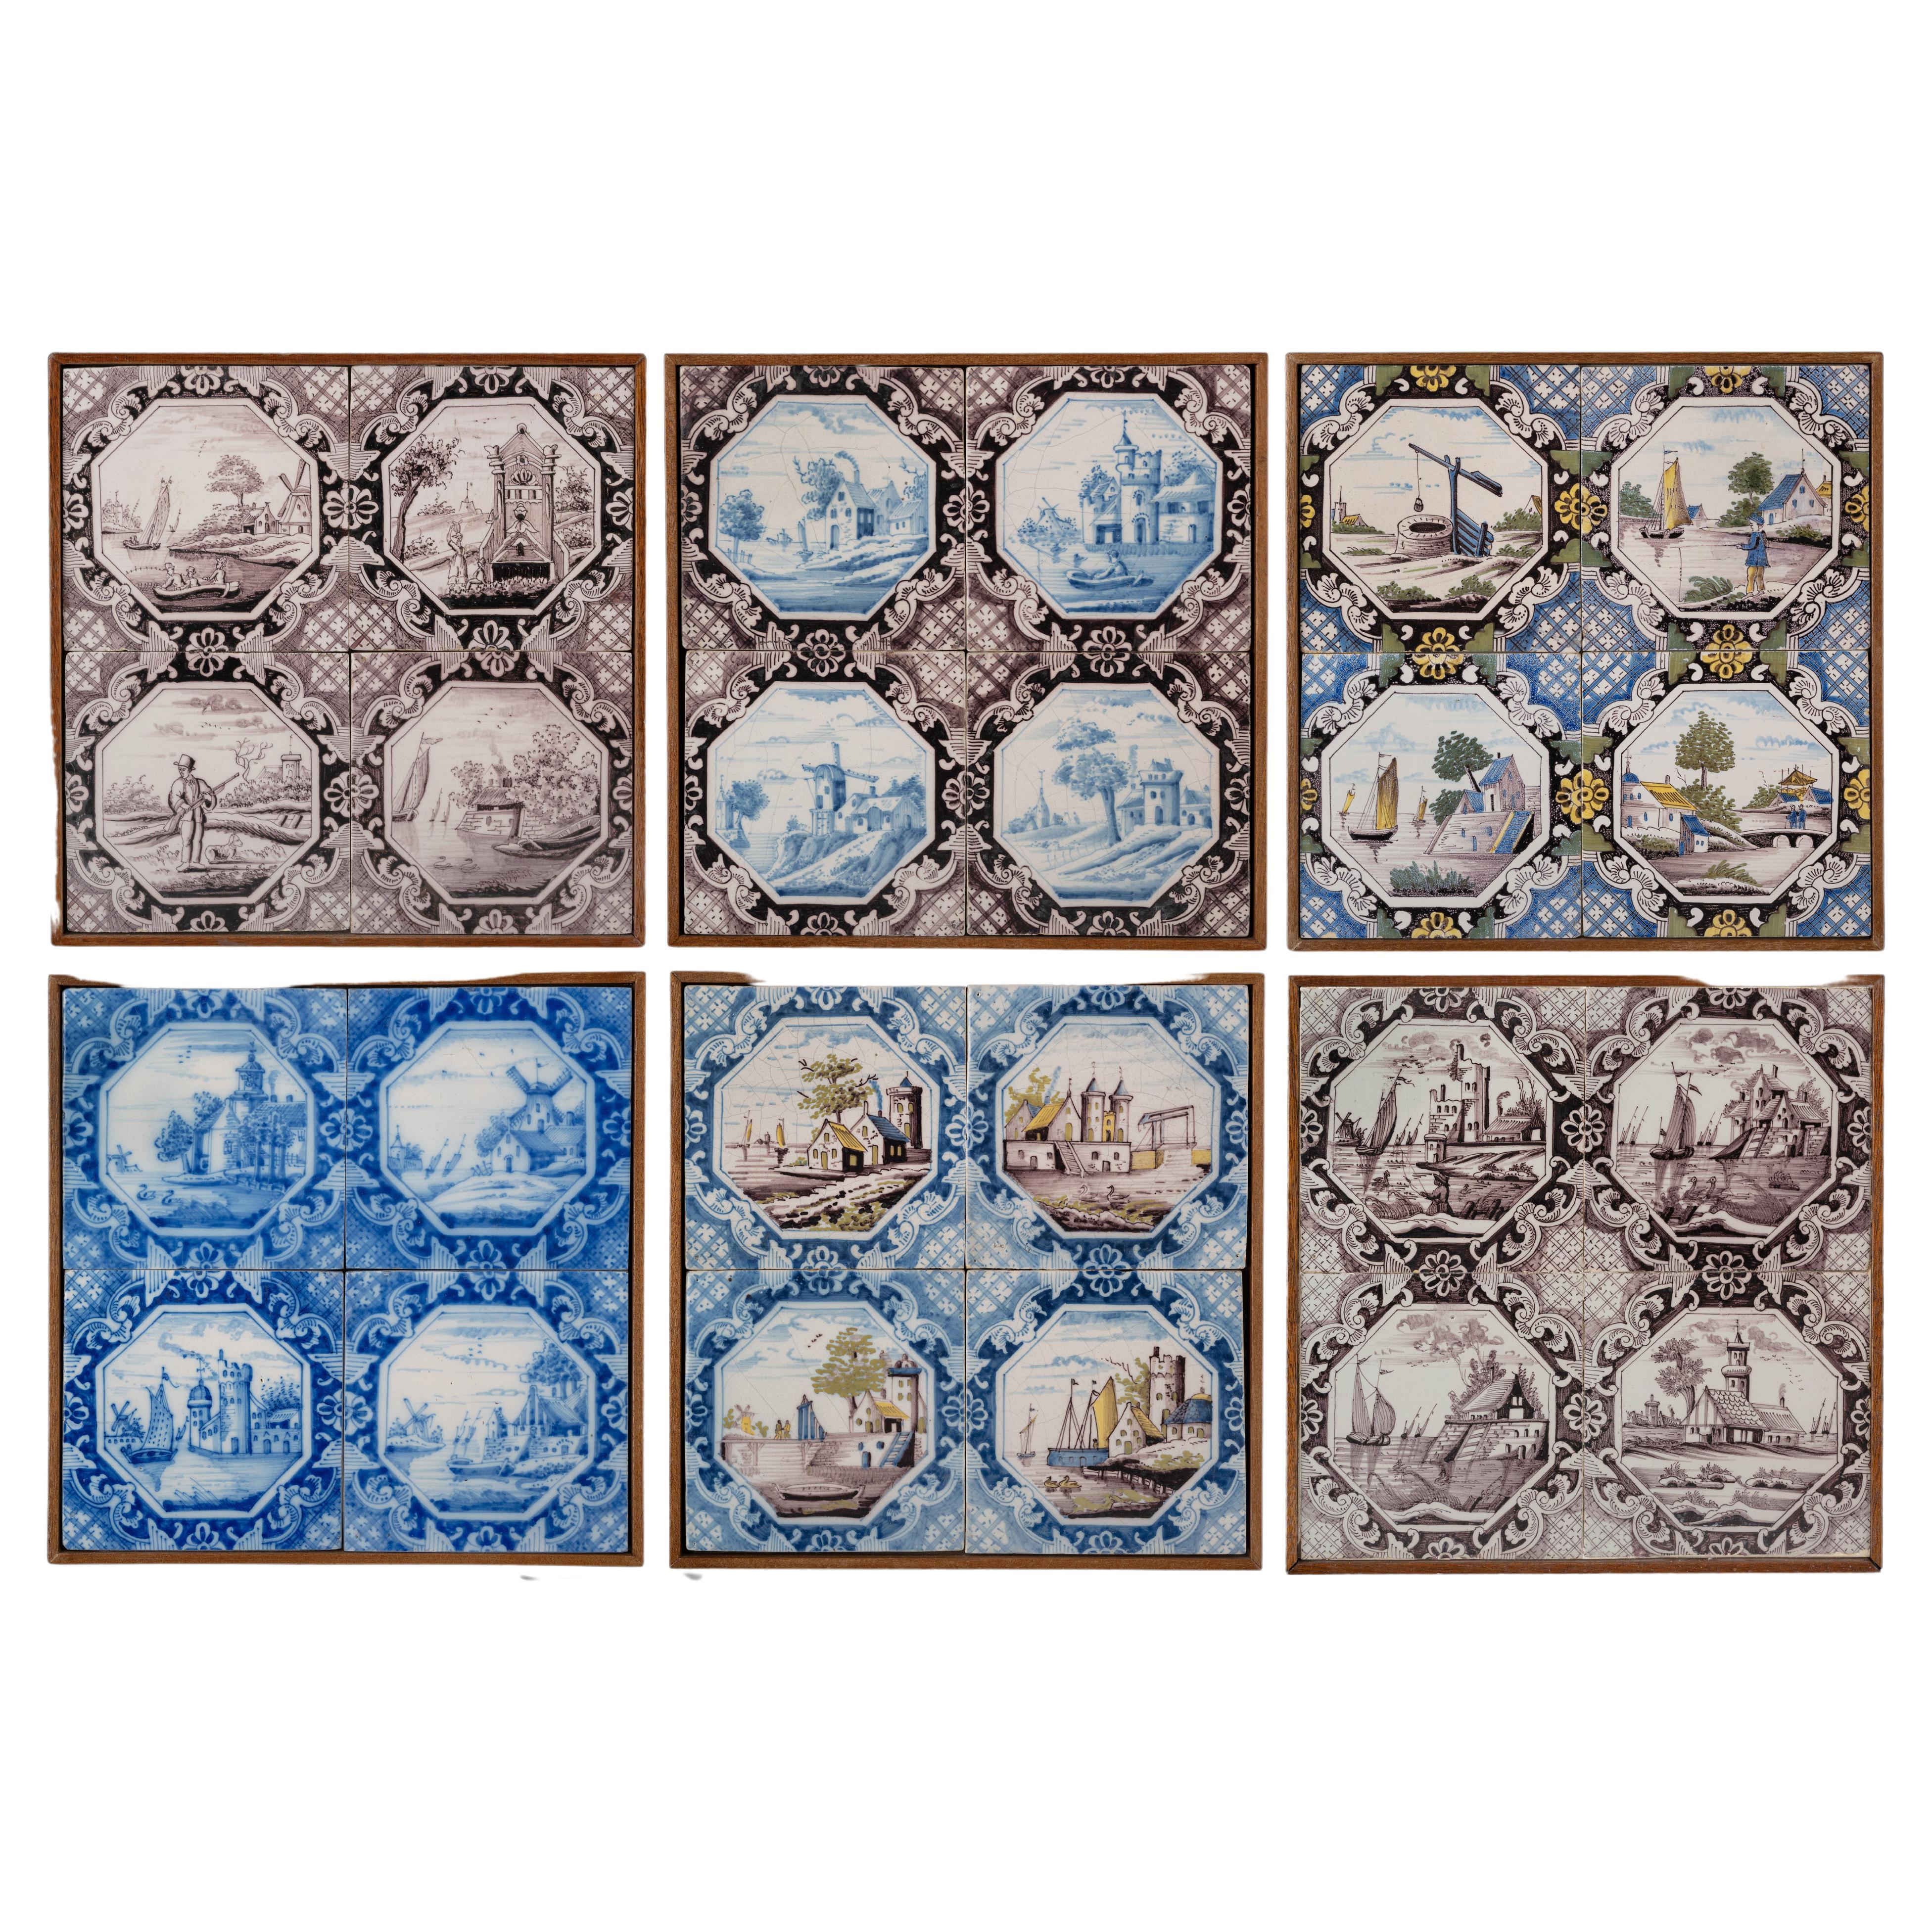 Six Delft Tile Panels of Four Landscape Tiles Each, Total of 24 Tiles